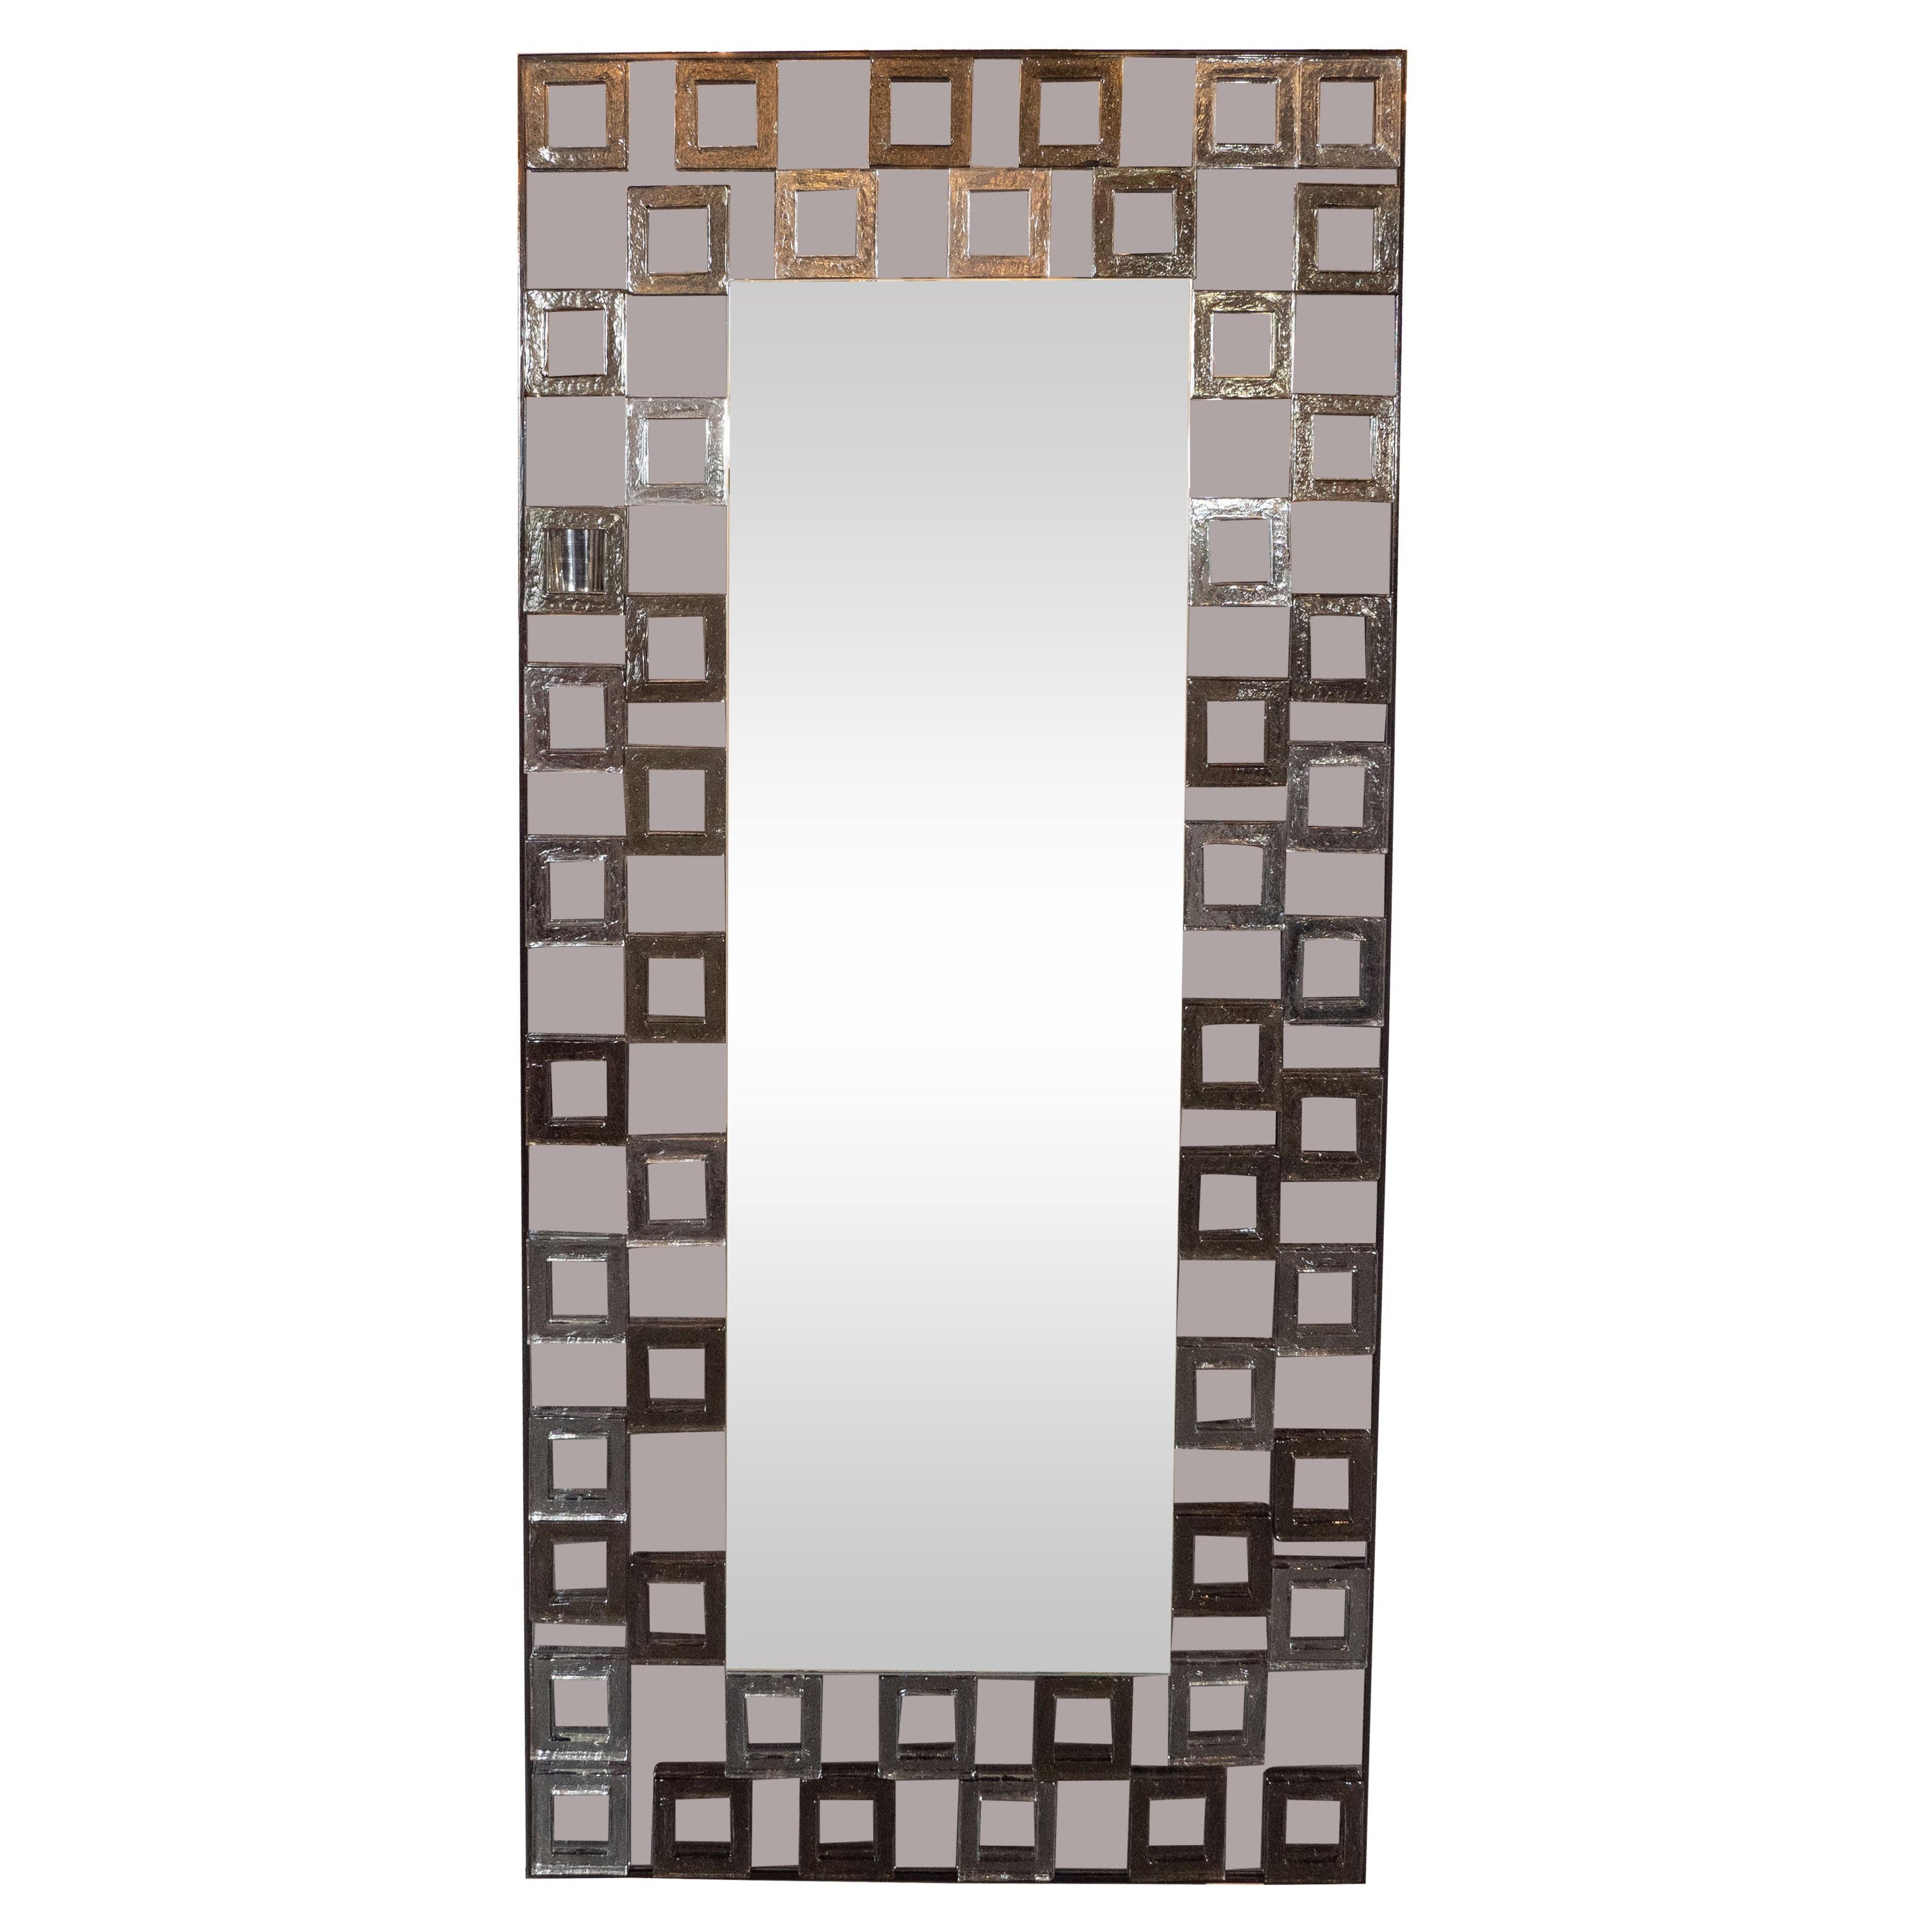 Modernistischer mundgeblasener Murano-Rauchspiegel mit sich wiederholenden quadratischen Motiven